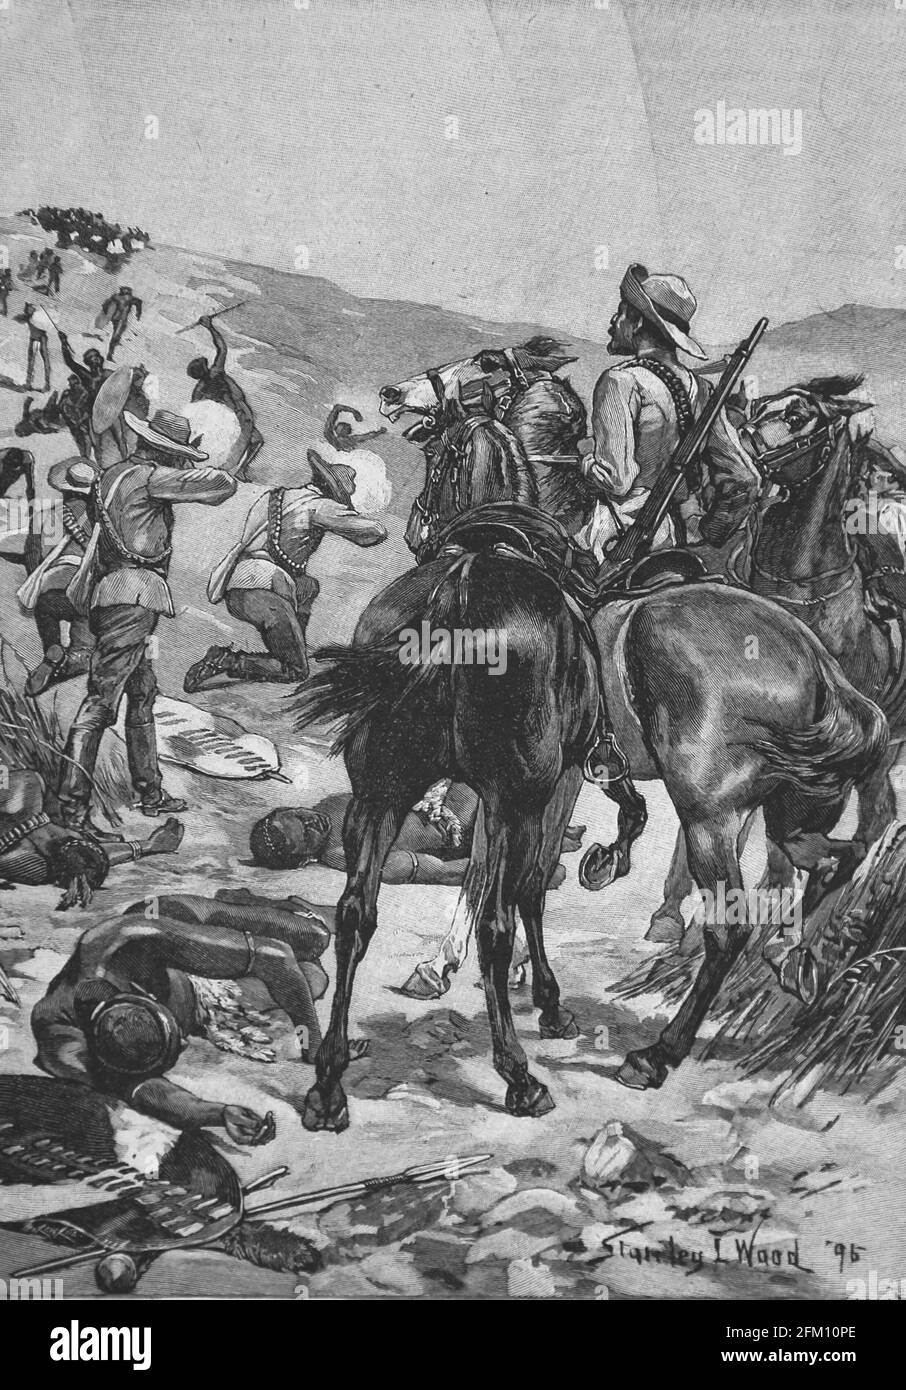 Anglo-Zulu Krieg zwischen dem Britischen Imperium und dem Zulu-Königreich, 1879. Kampf. Iberische Illustration, 1898. Stockfoto